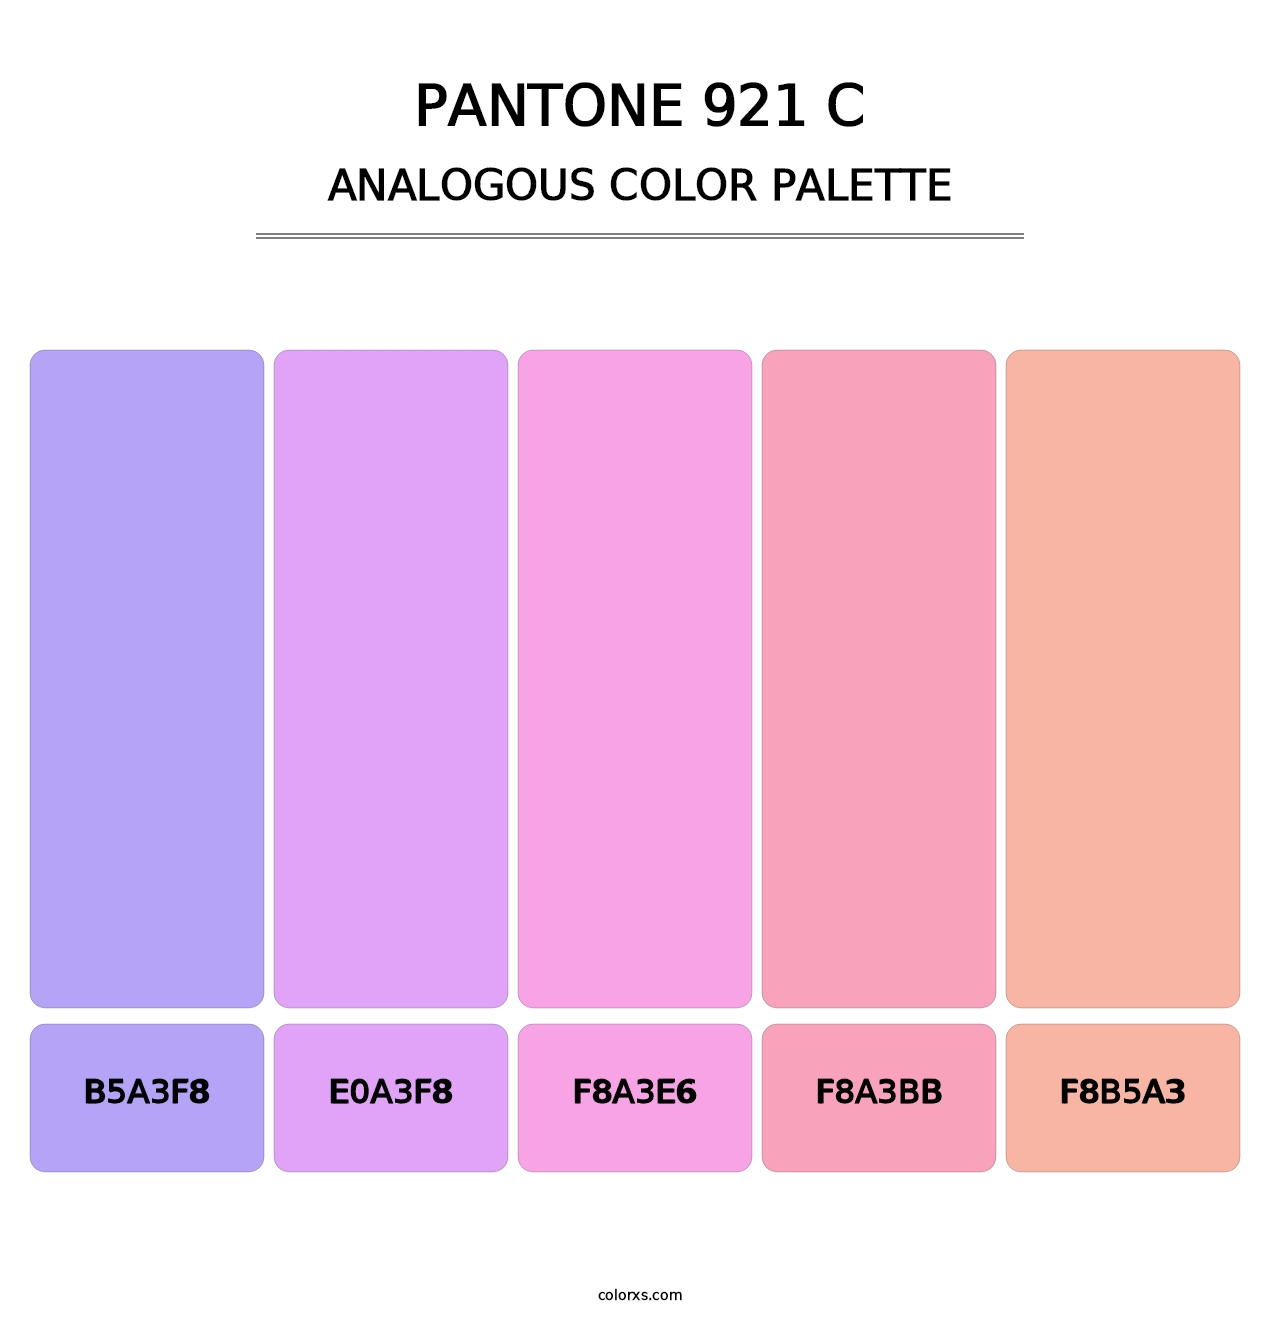 PANTONE 921 C - Analogous Color Palette